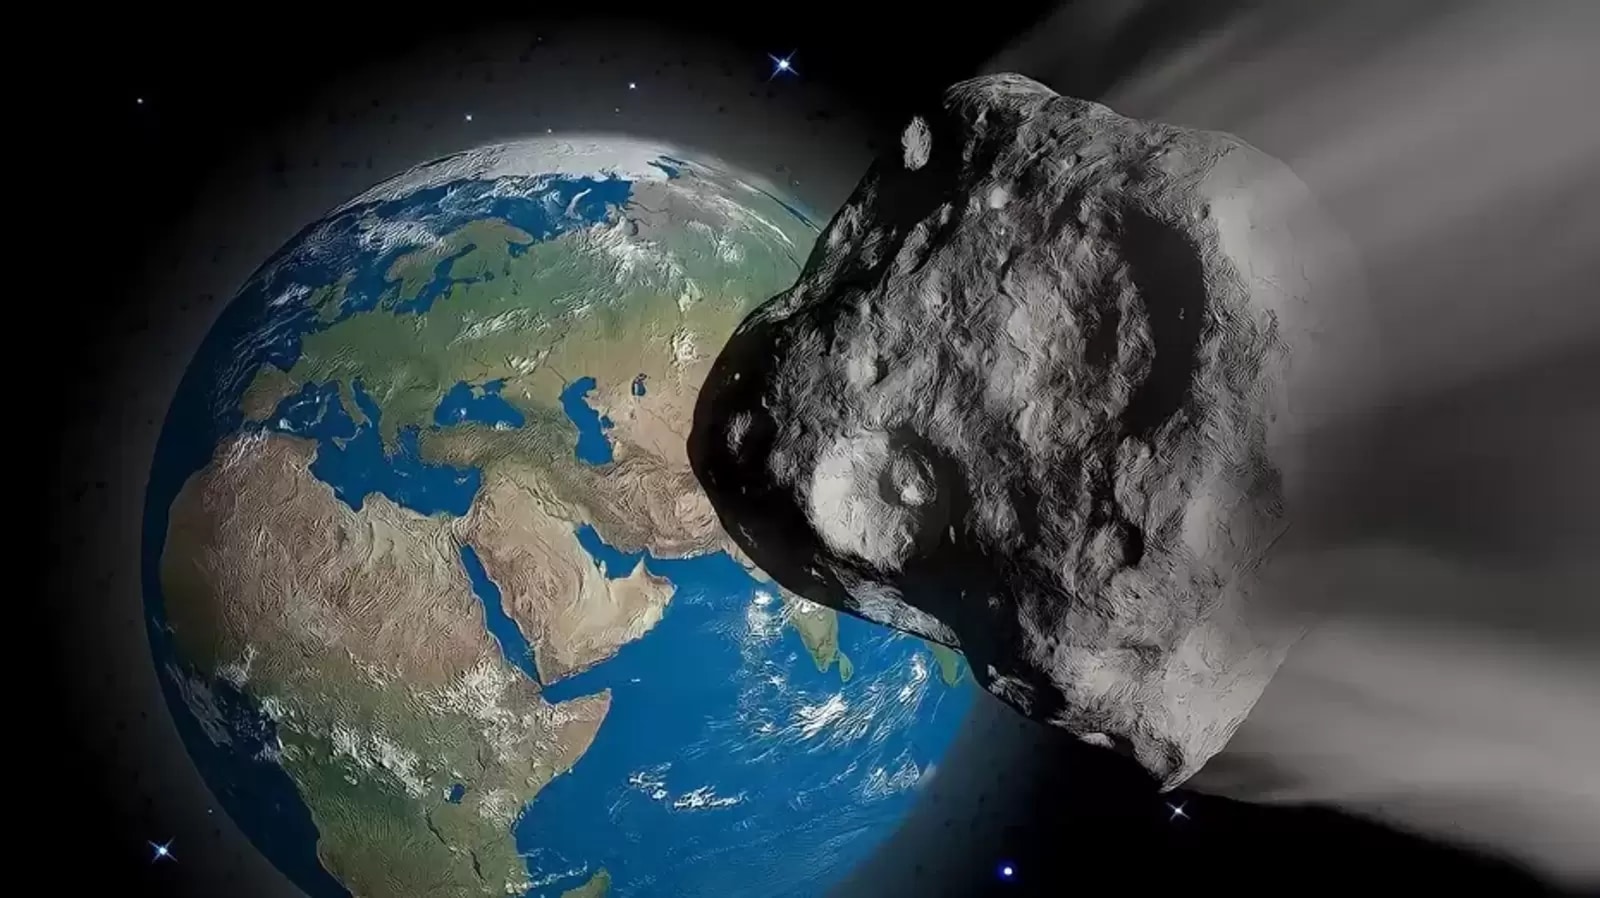 ¡Encuentra el misterioso asteroide!  La ESA lanza un desafío navideño sobre un enorme asteroide